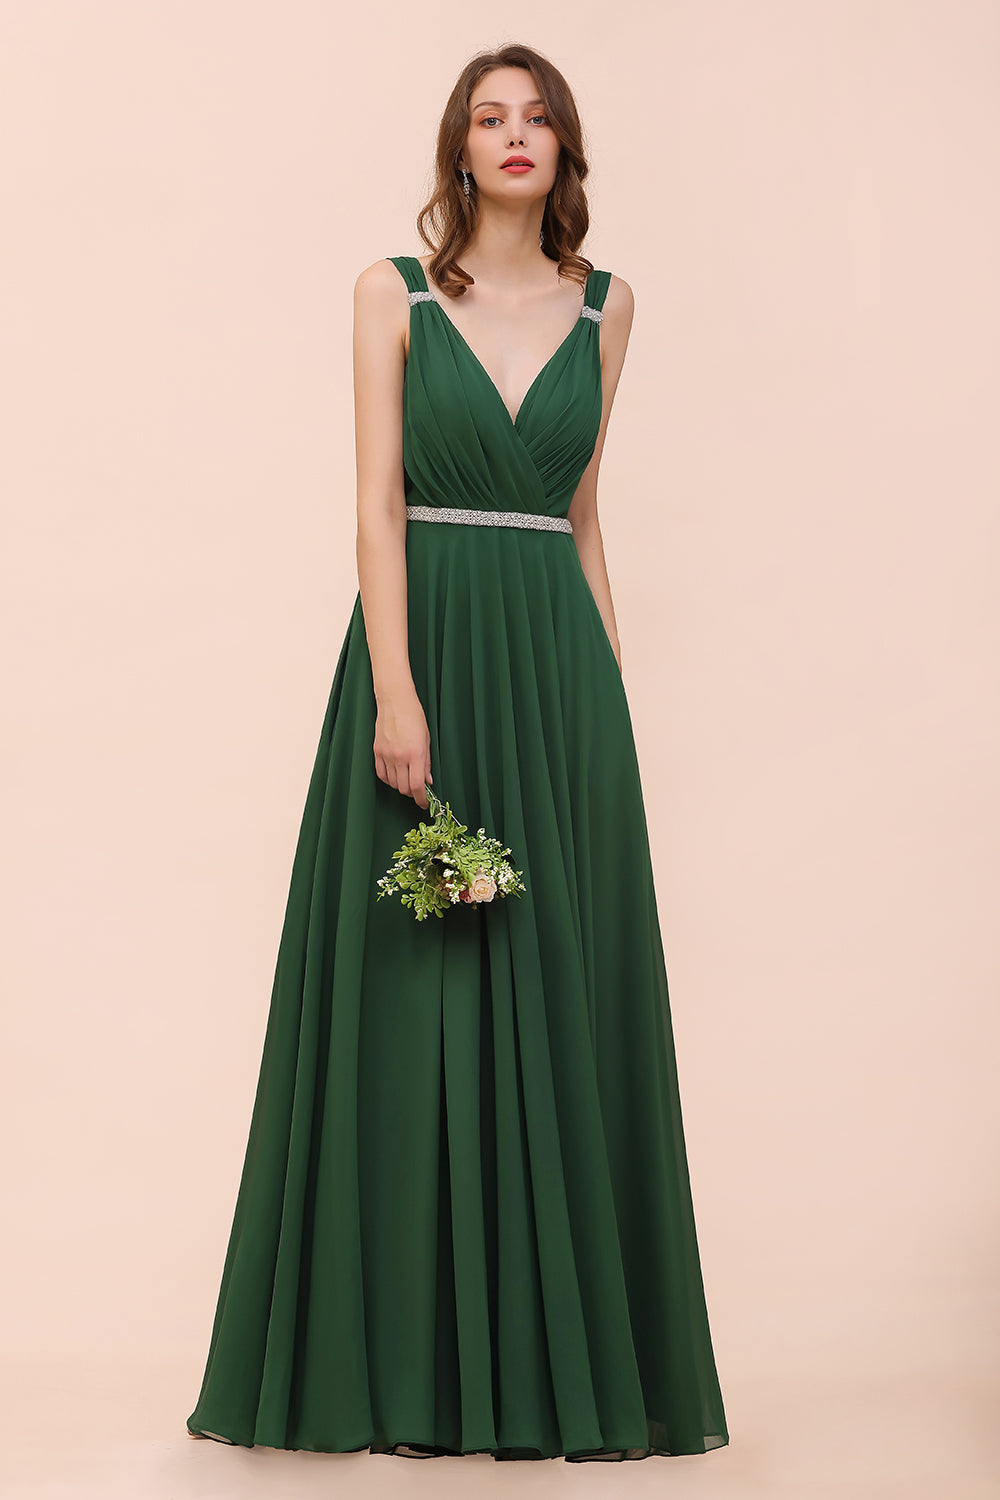 Bestellen sie Brautjungfernkleider Dunkel Grün online bei babyonlinedress.de. Langes Brautjungfernkleid Günstig für Sie maß geschneidert kaufen.